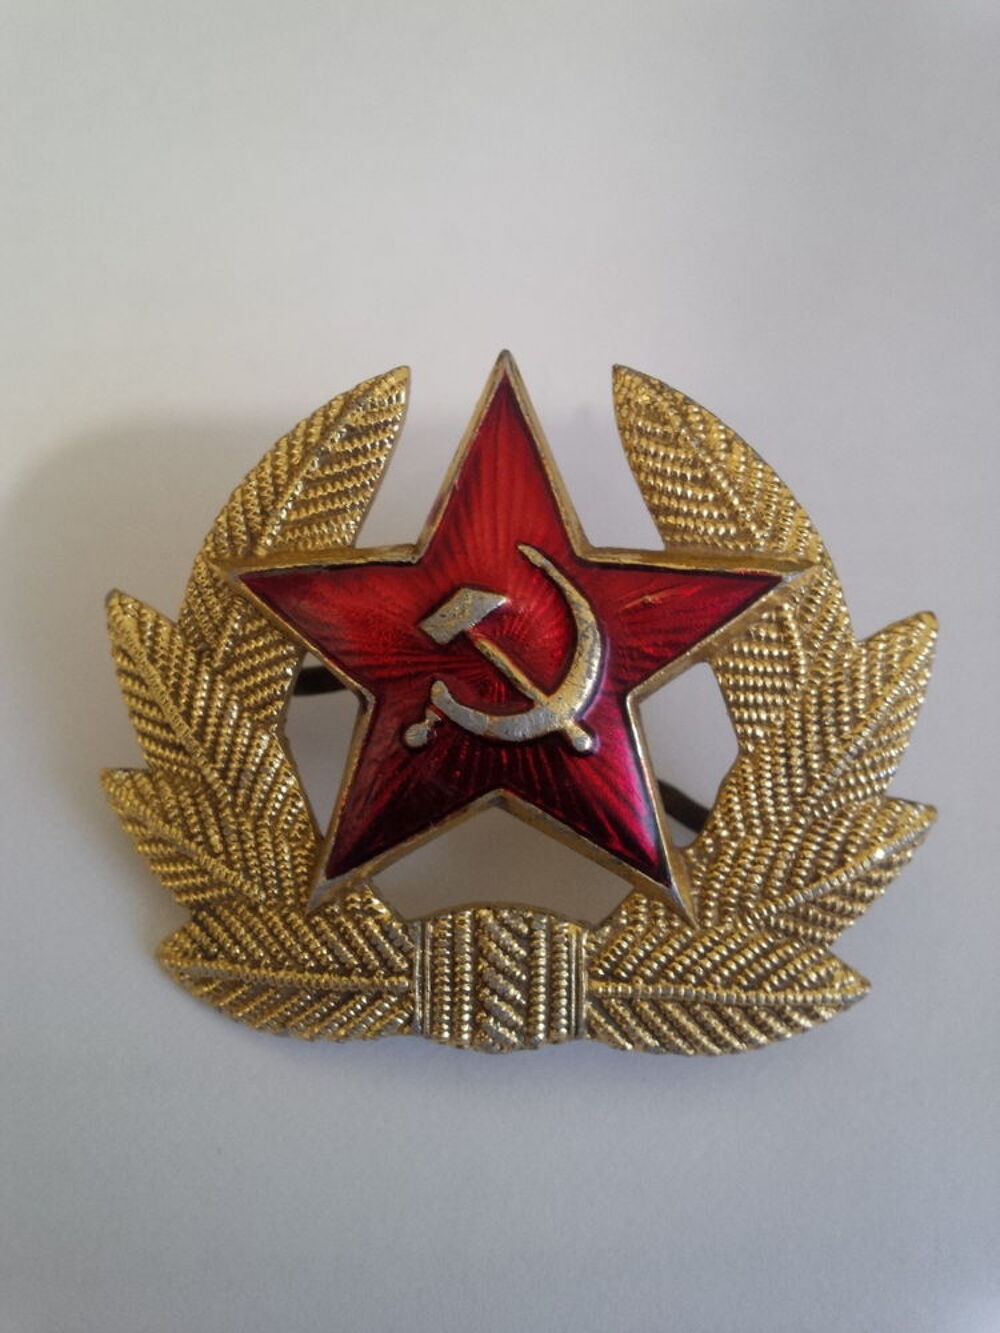 Insigne militaire (Ex URSS) pour collectionneur 4. 